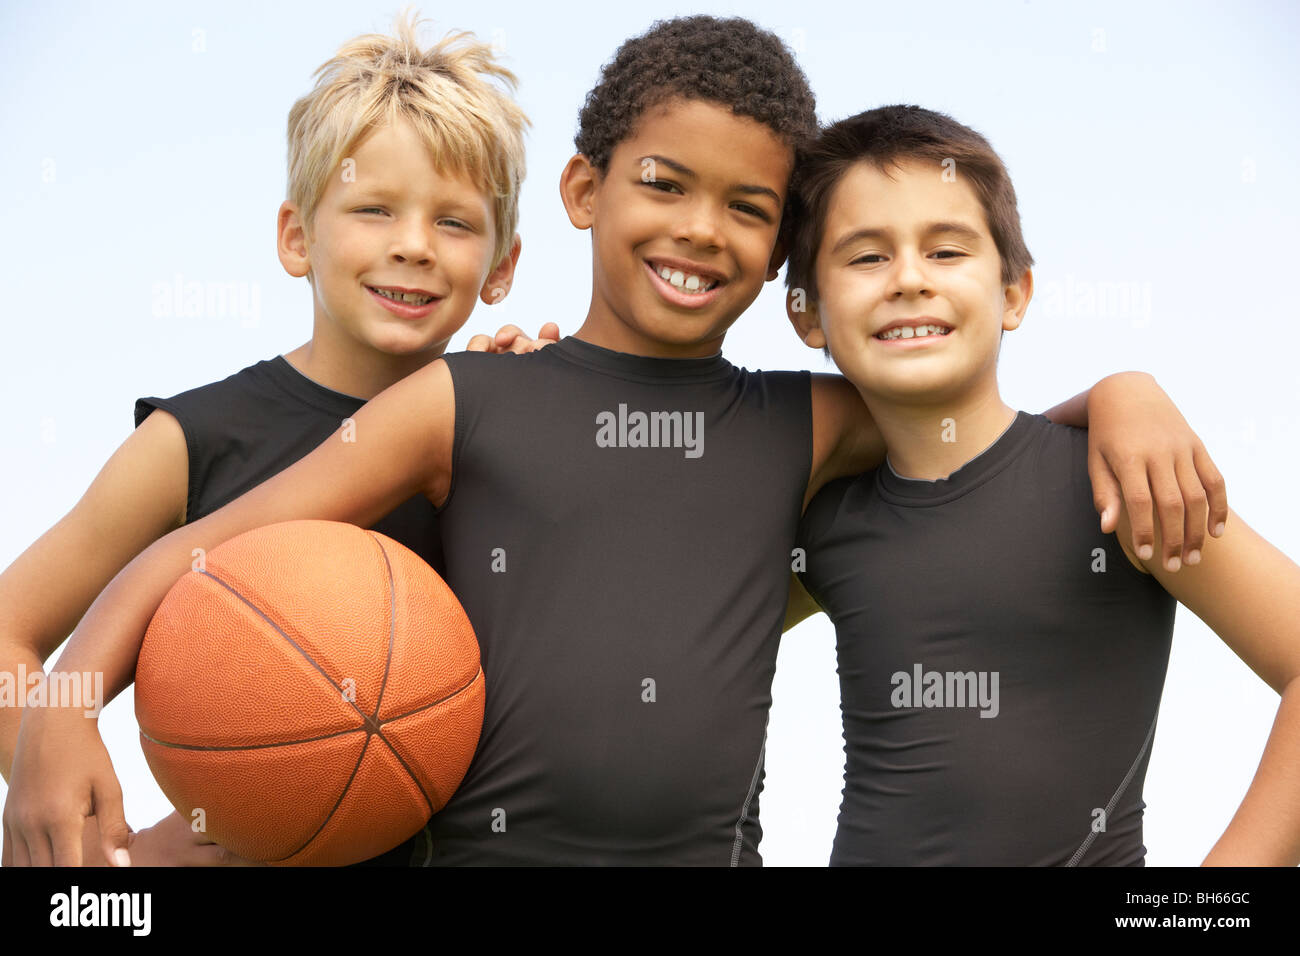 Les jeunes garçons dans l'équipe de basket-ball Banque D'Images